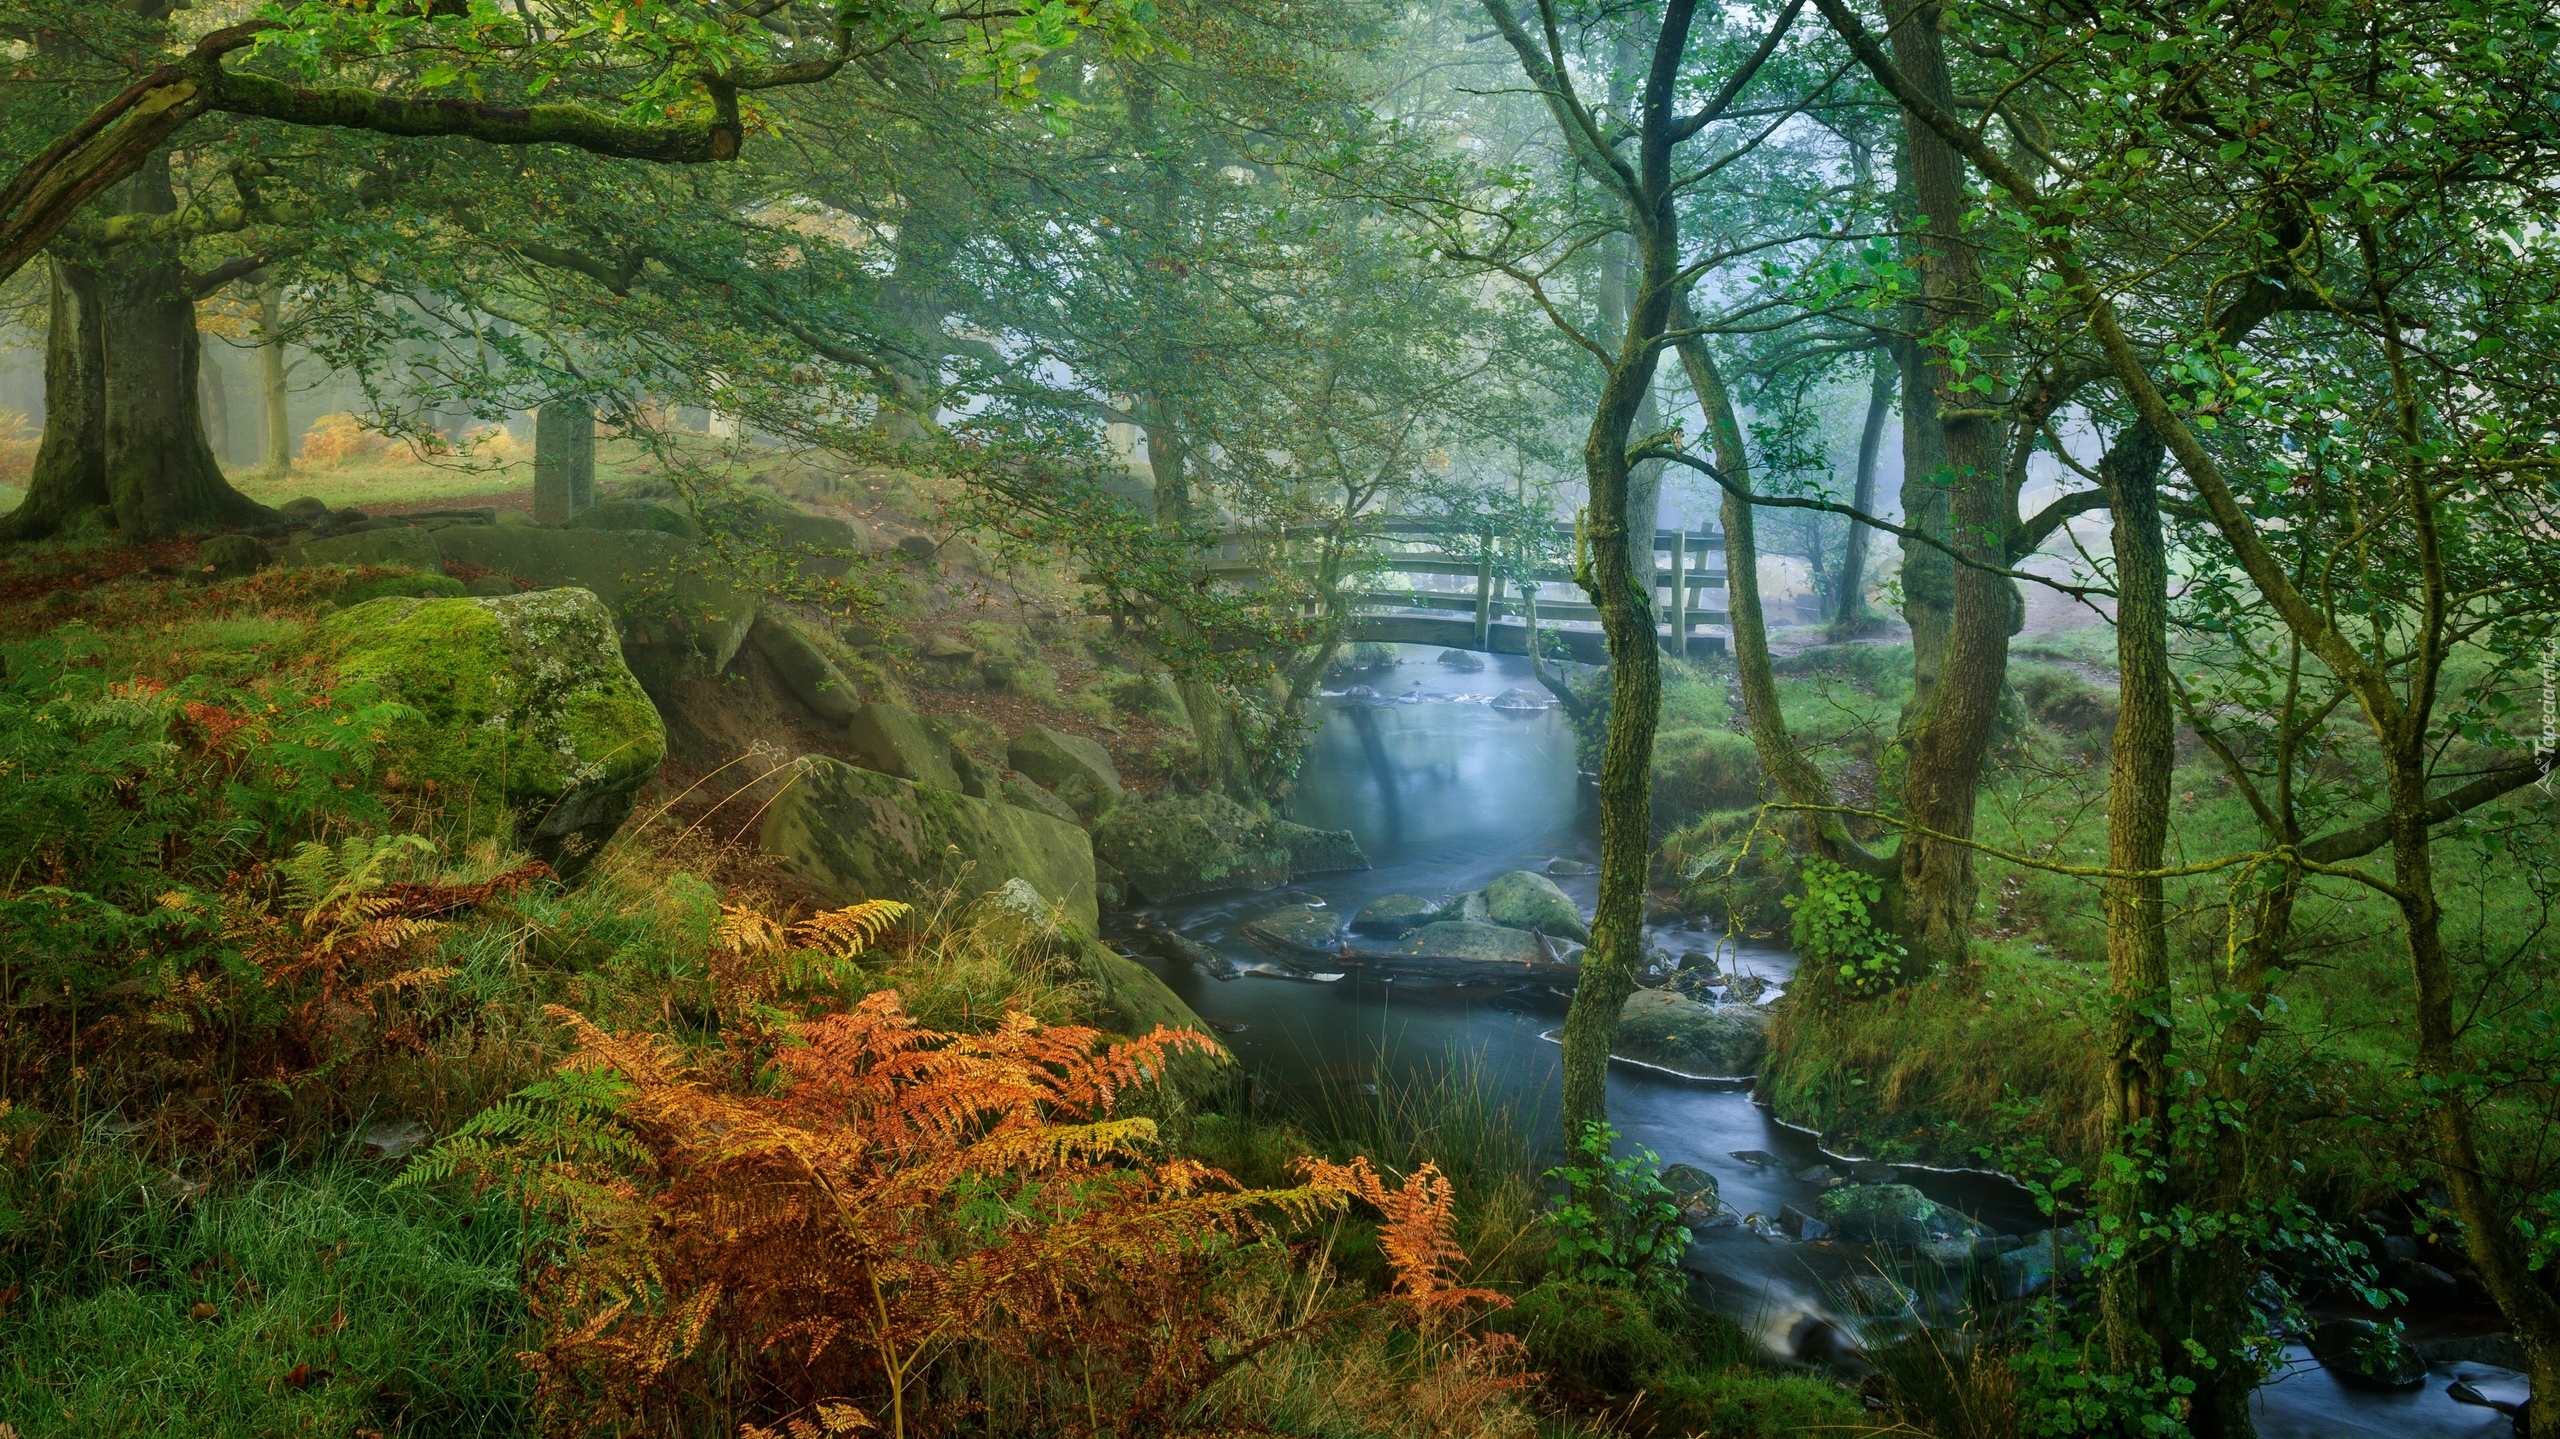 Las, Rzeka Burbage Brook, Drzewa, Paprocie, Omszałe, Kamienie, Mostek, Mgła, Park Narodowy Peak District, Hrabstwo Derbyshire, Anglia